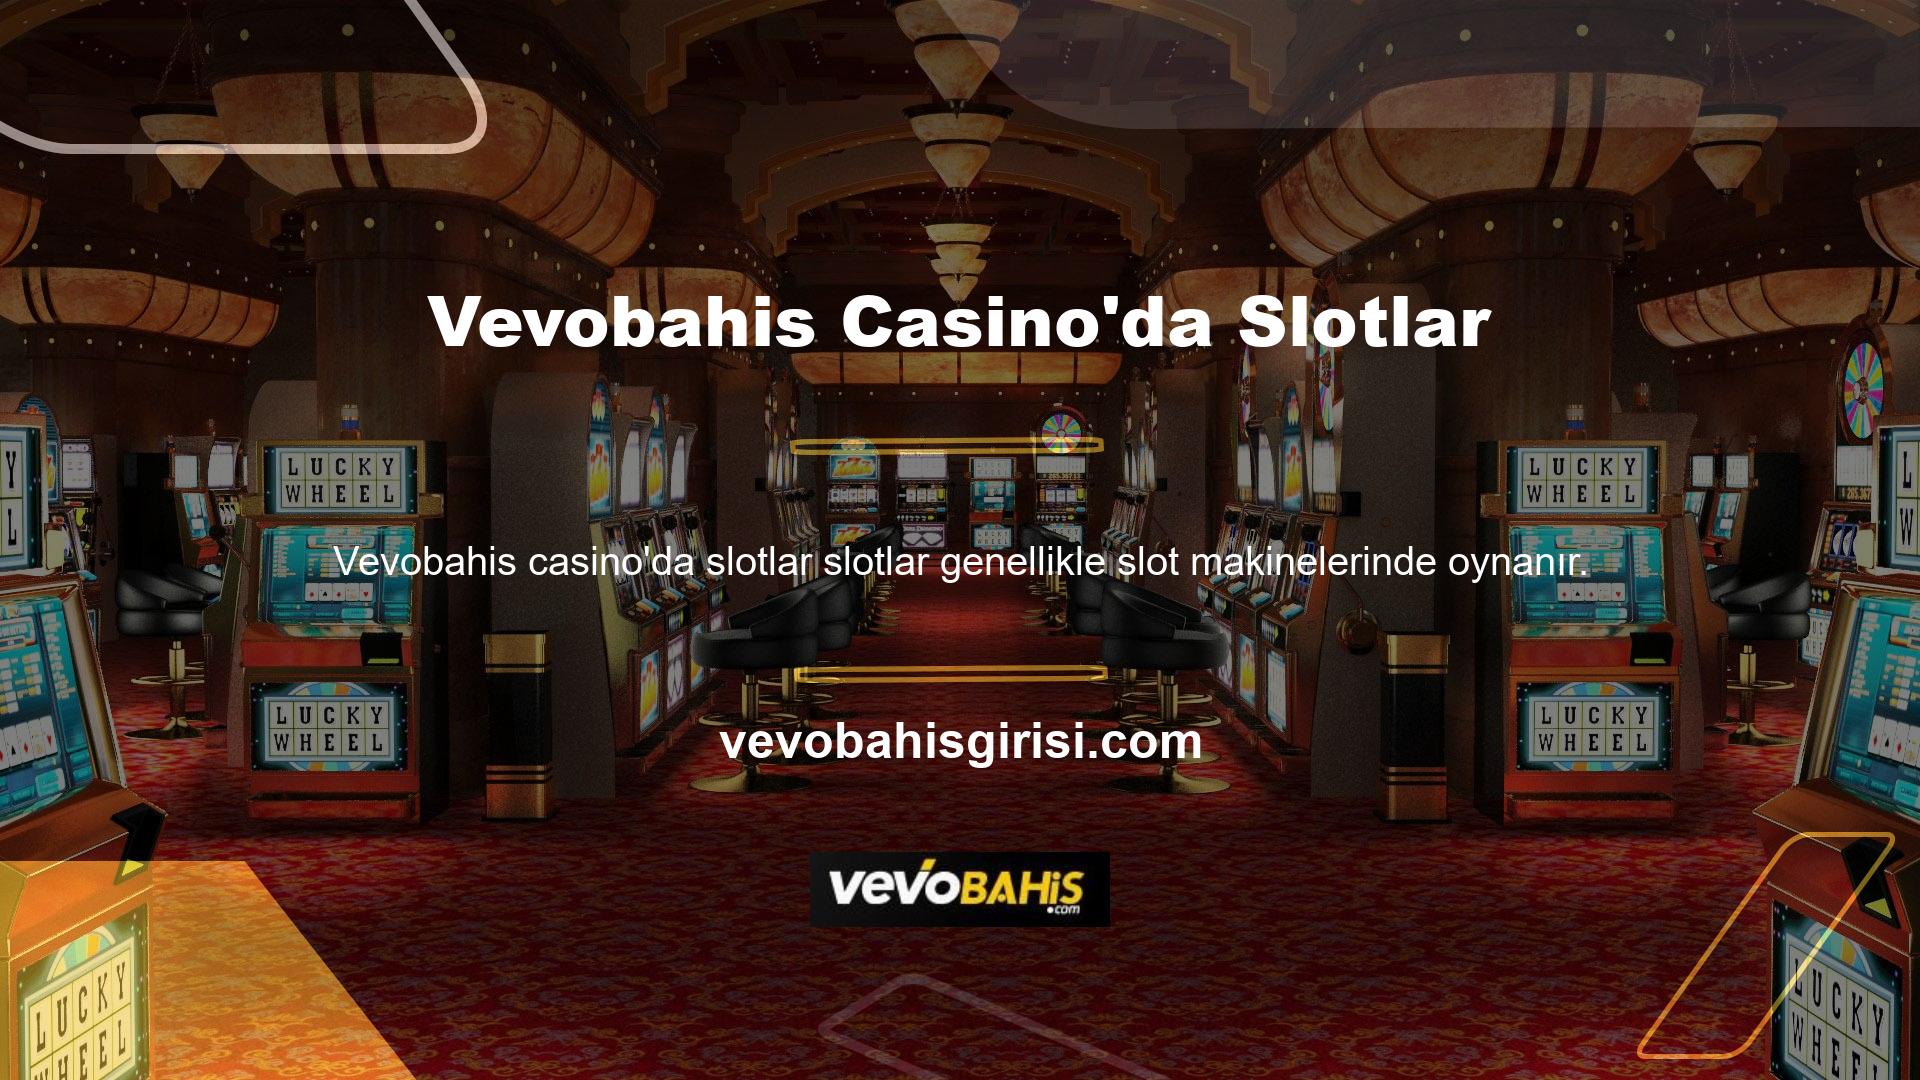 Otellerin, casinoların lobilerinde her zaman görülebilir